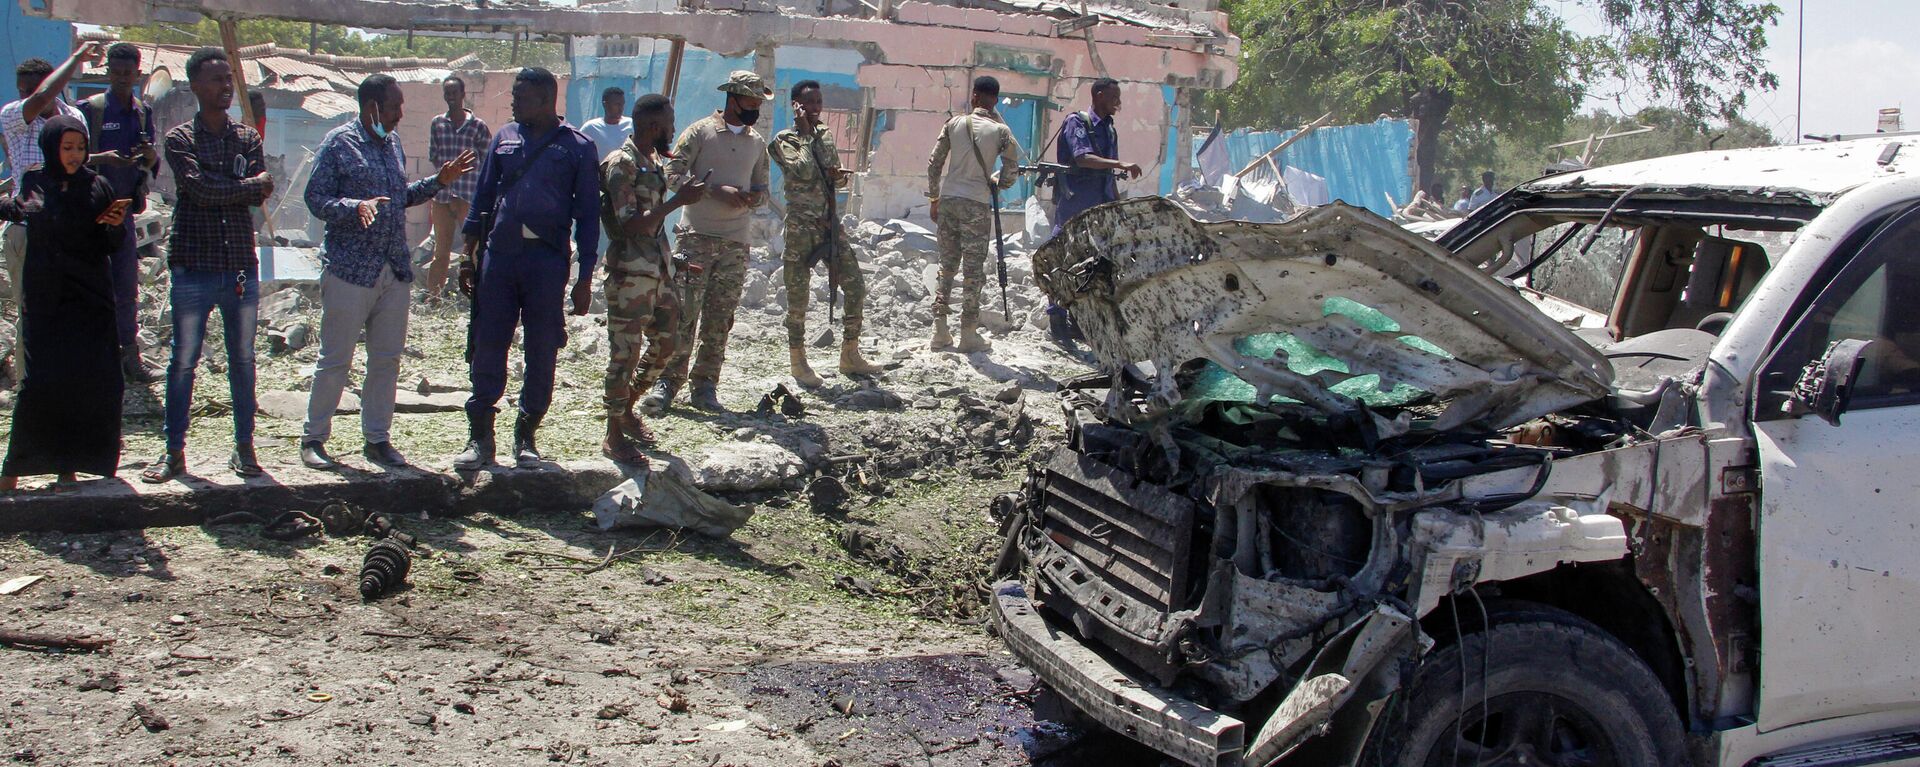 Fuerzas de seguridad y otras personas observan los restos de un vehículo blindado alcanzado por una explosión en Mogadiscio, Somalia, el 12 de enero de 2022. - Sputnik Mundo, 1920, 12.01.2022